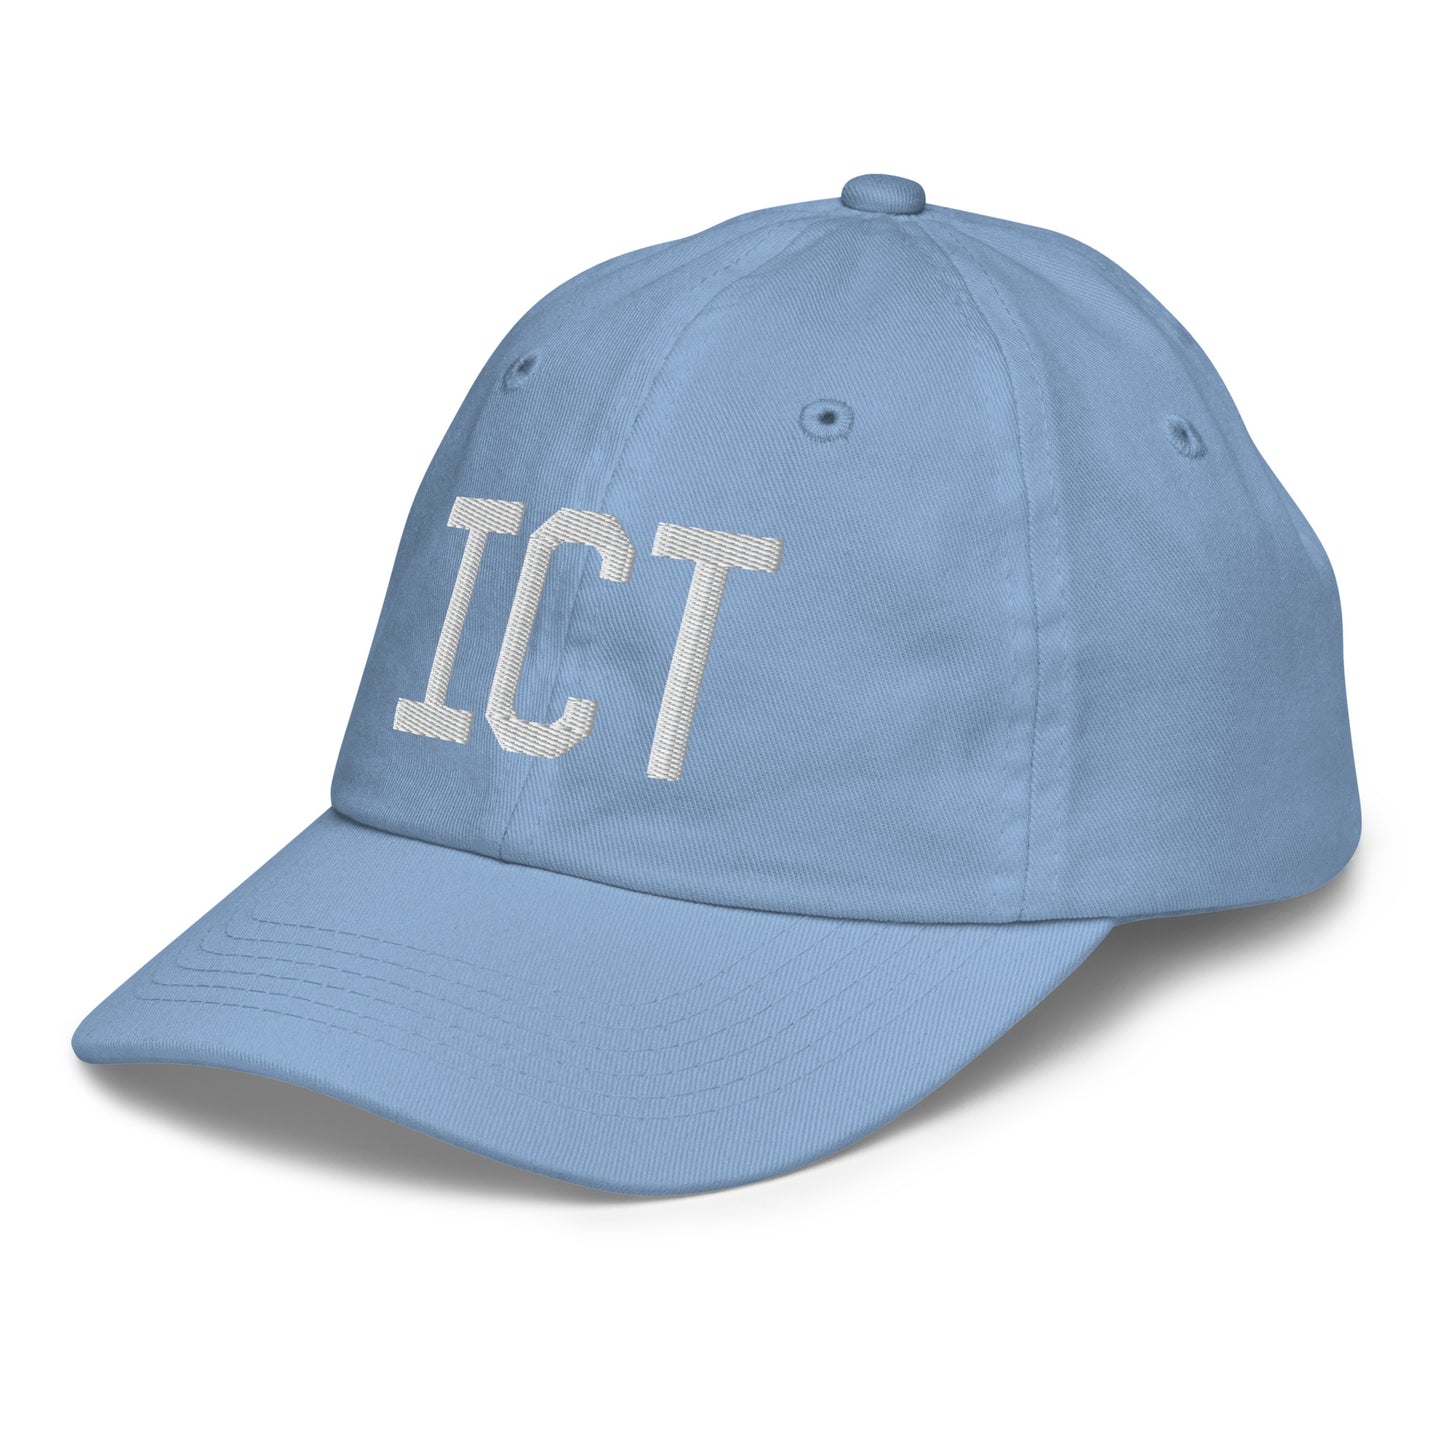 Airport Code Kid's Baseball Cap - White • ICT Wichita • YHM Designs - Image 24